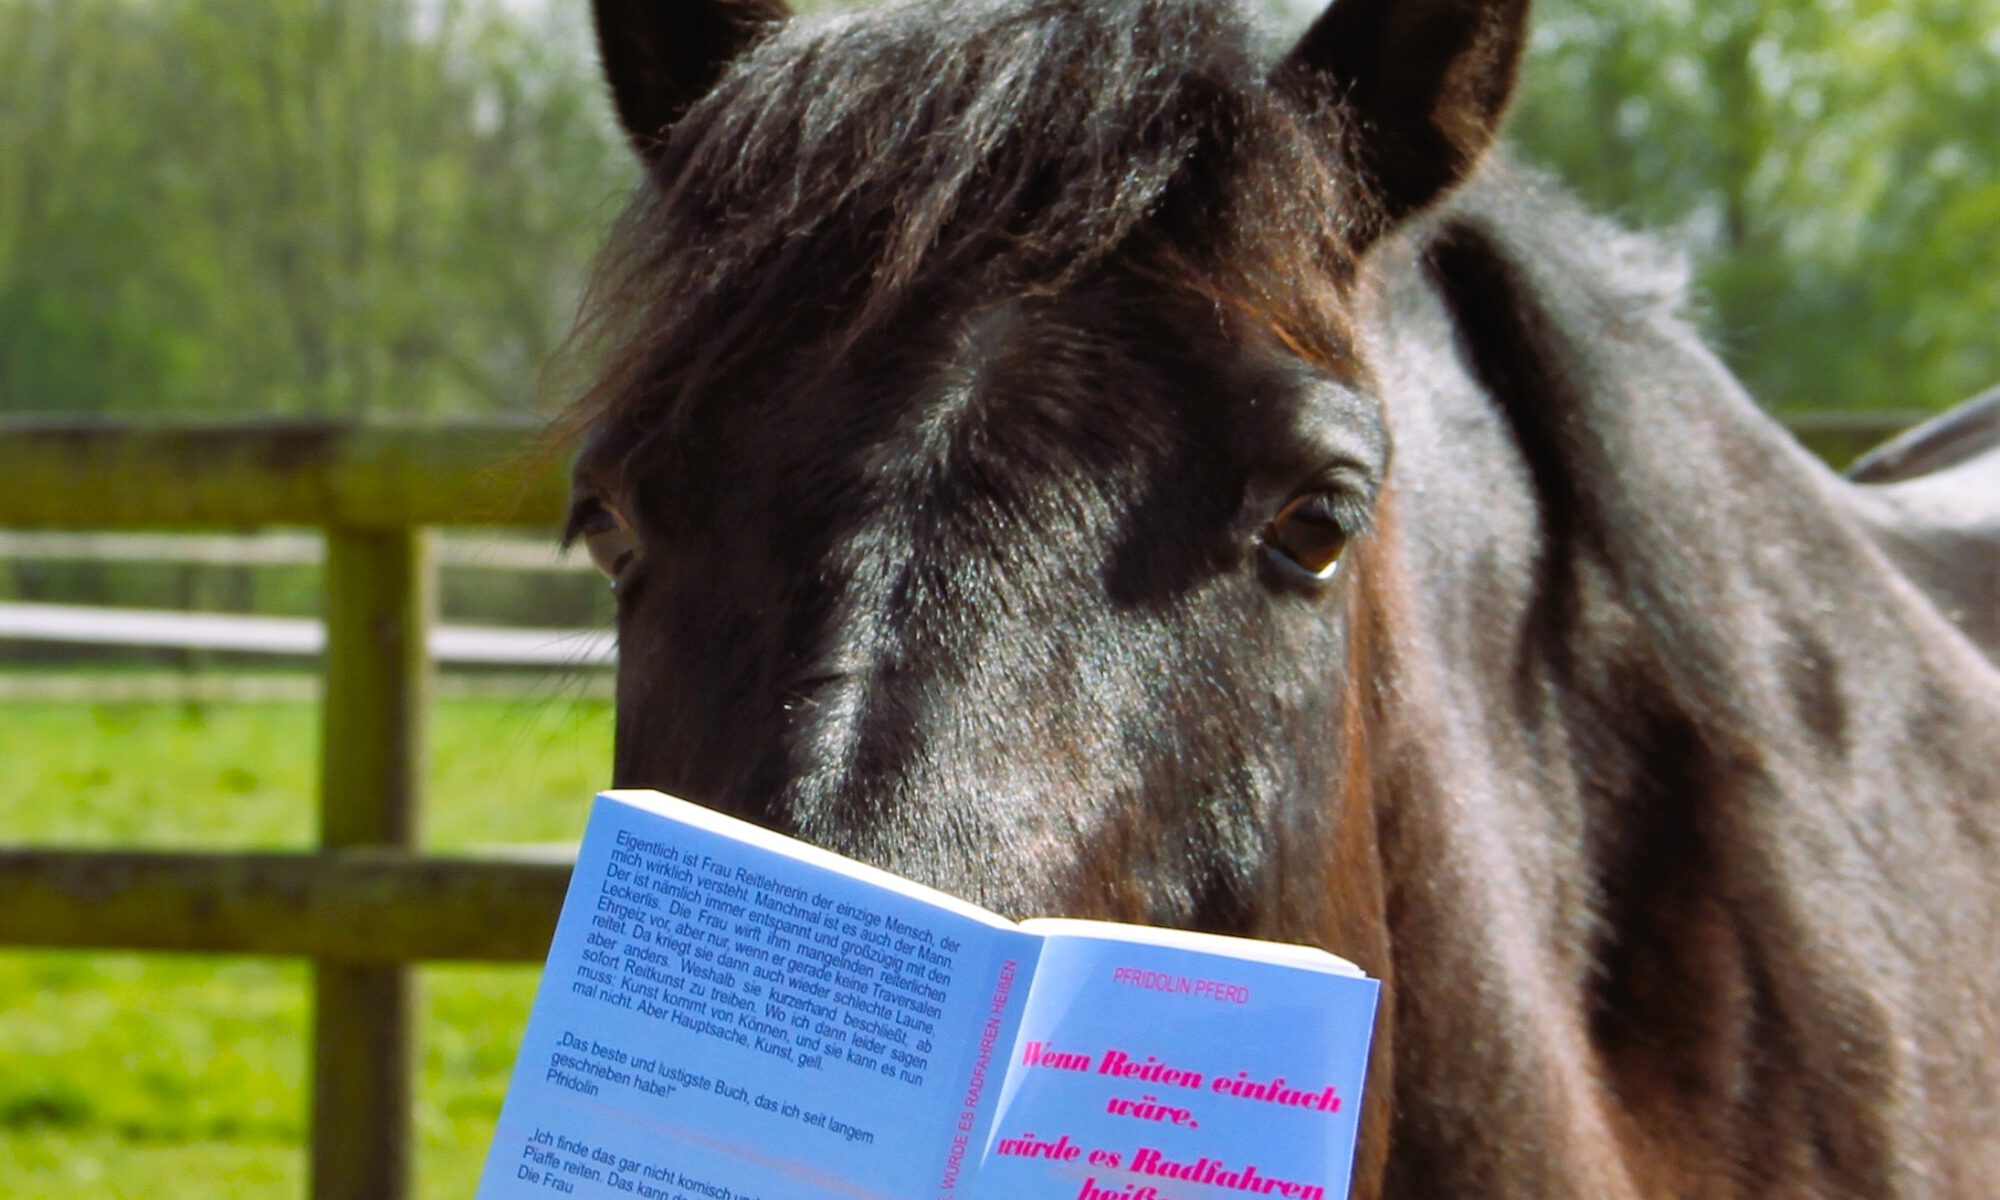 Ein Pferd liest ein Buch mit dem Titel "Wenn Reiten einfach wäre, würde es Radfahren heißen".